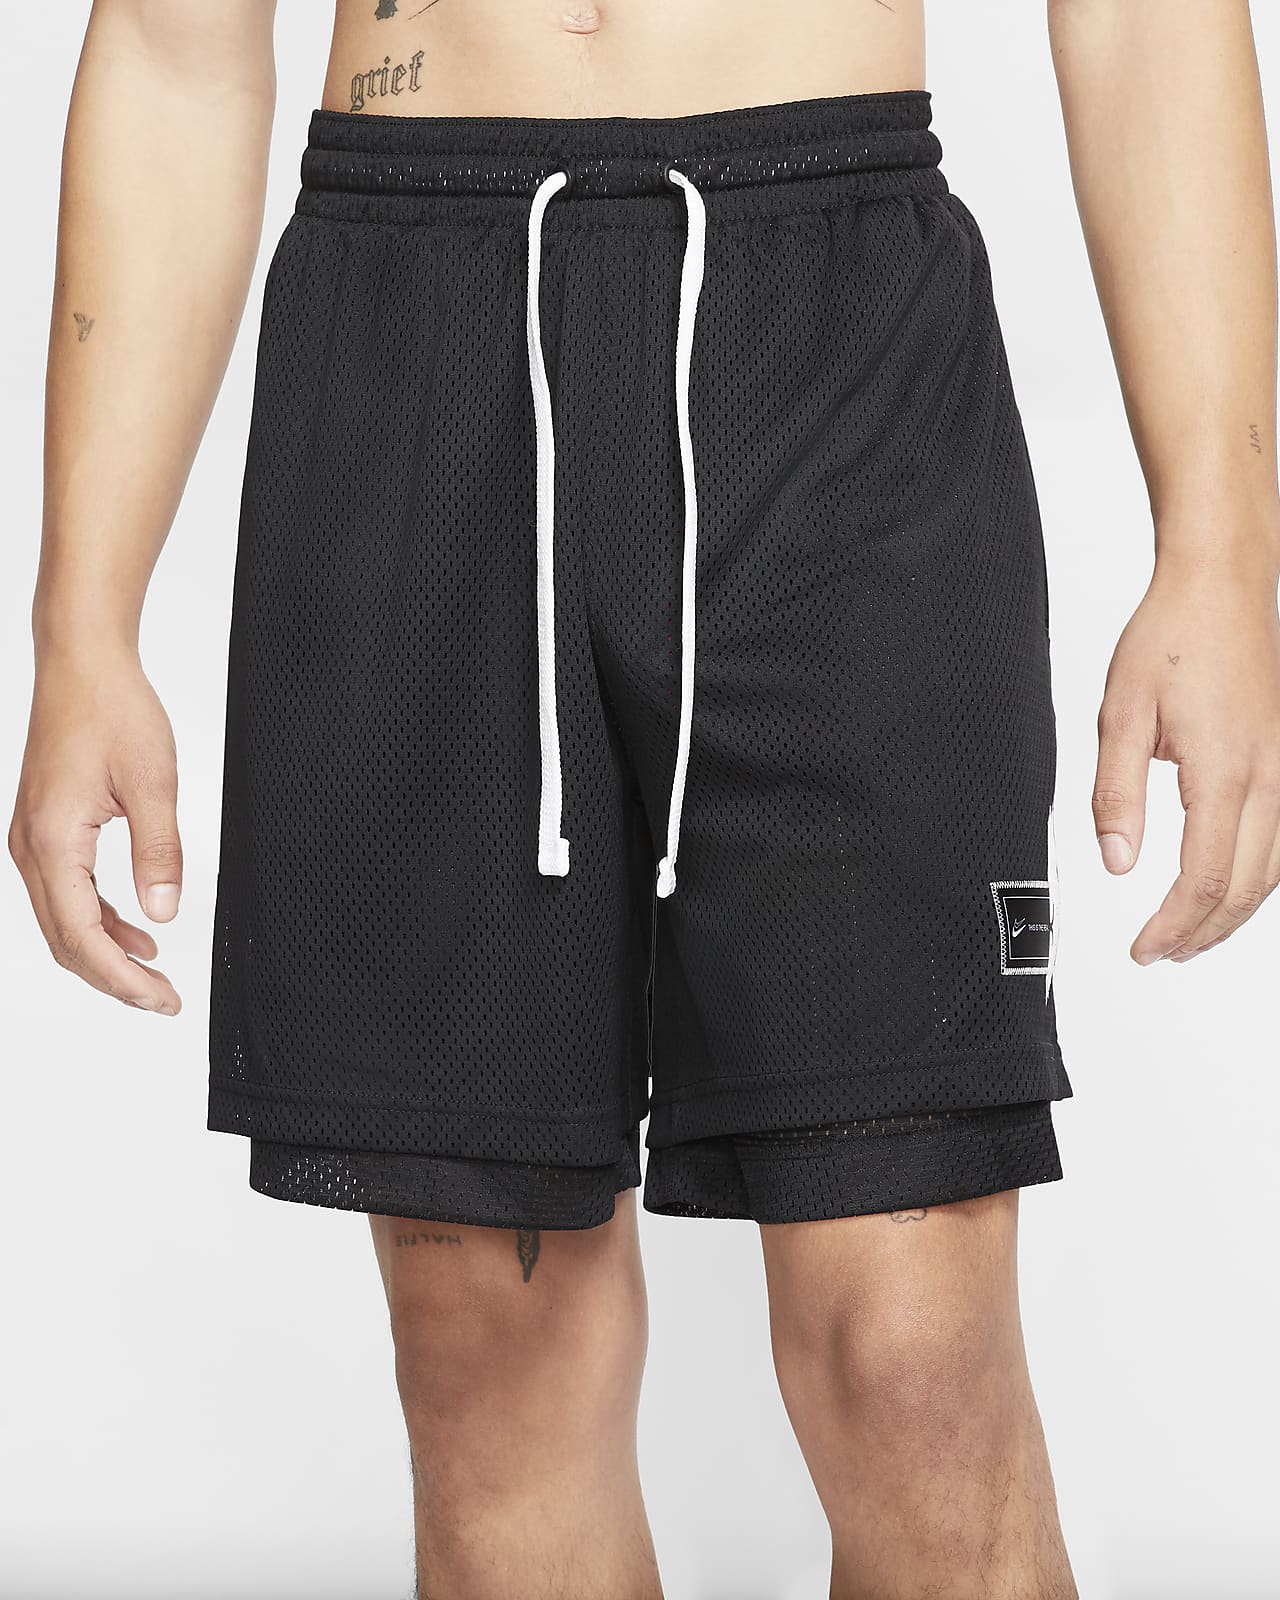 Shorts de básquetbol KD Nike. Nike.com